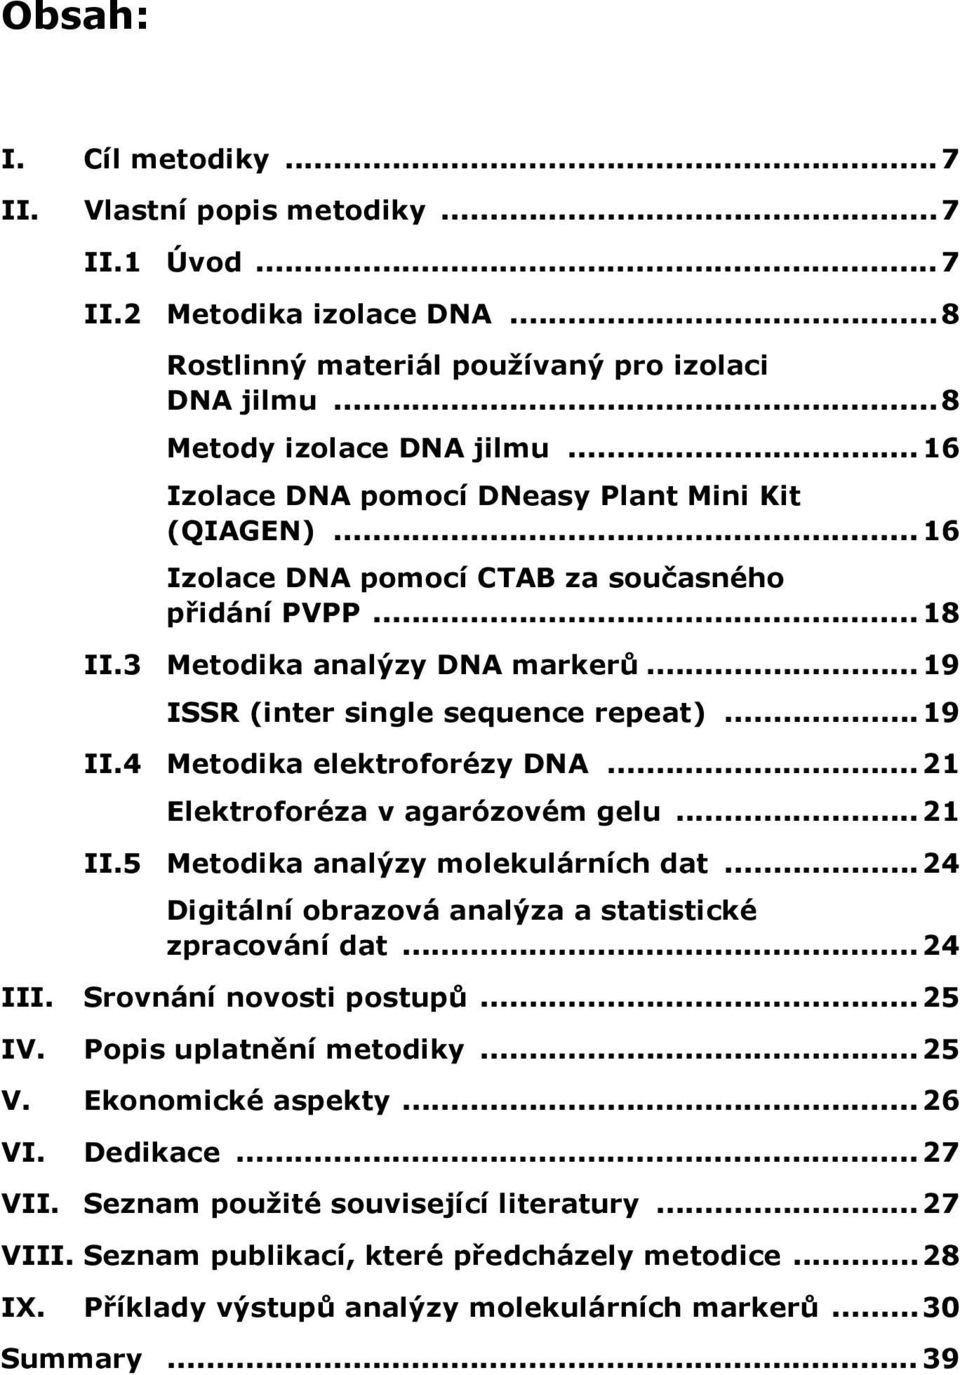 4 Metodika elektroforézy DNA...21 Elektroforéza v agarózovém gelu...21 II.5 Metodika analýzy molekulárních dat...24 Digitální obrazová analýza a statistické zpracování dat... 24 III.